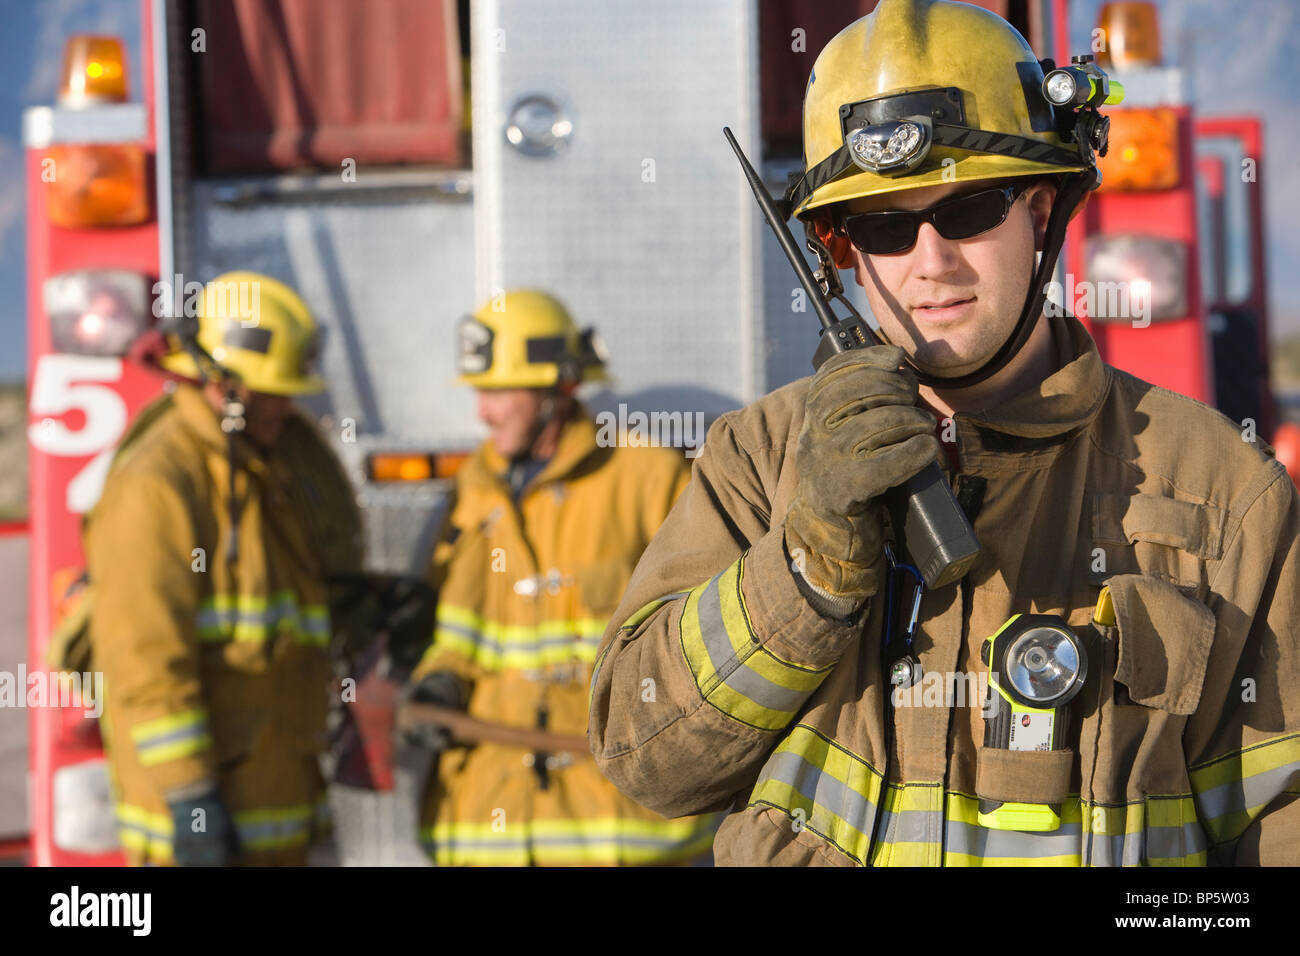 Arenoso empleo Polinizar Firefighter using walkie talkie Stock Photo - Alamy